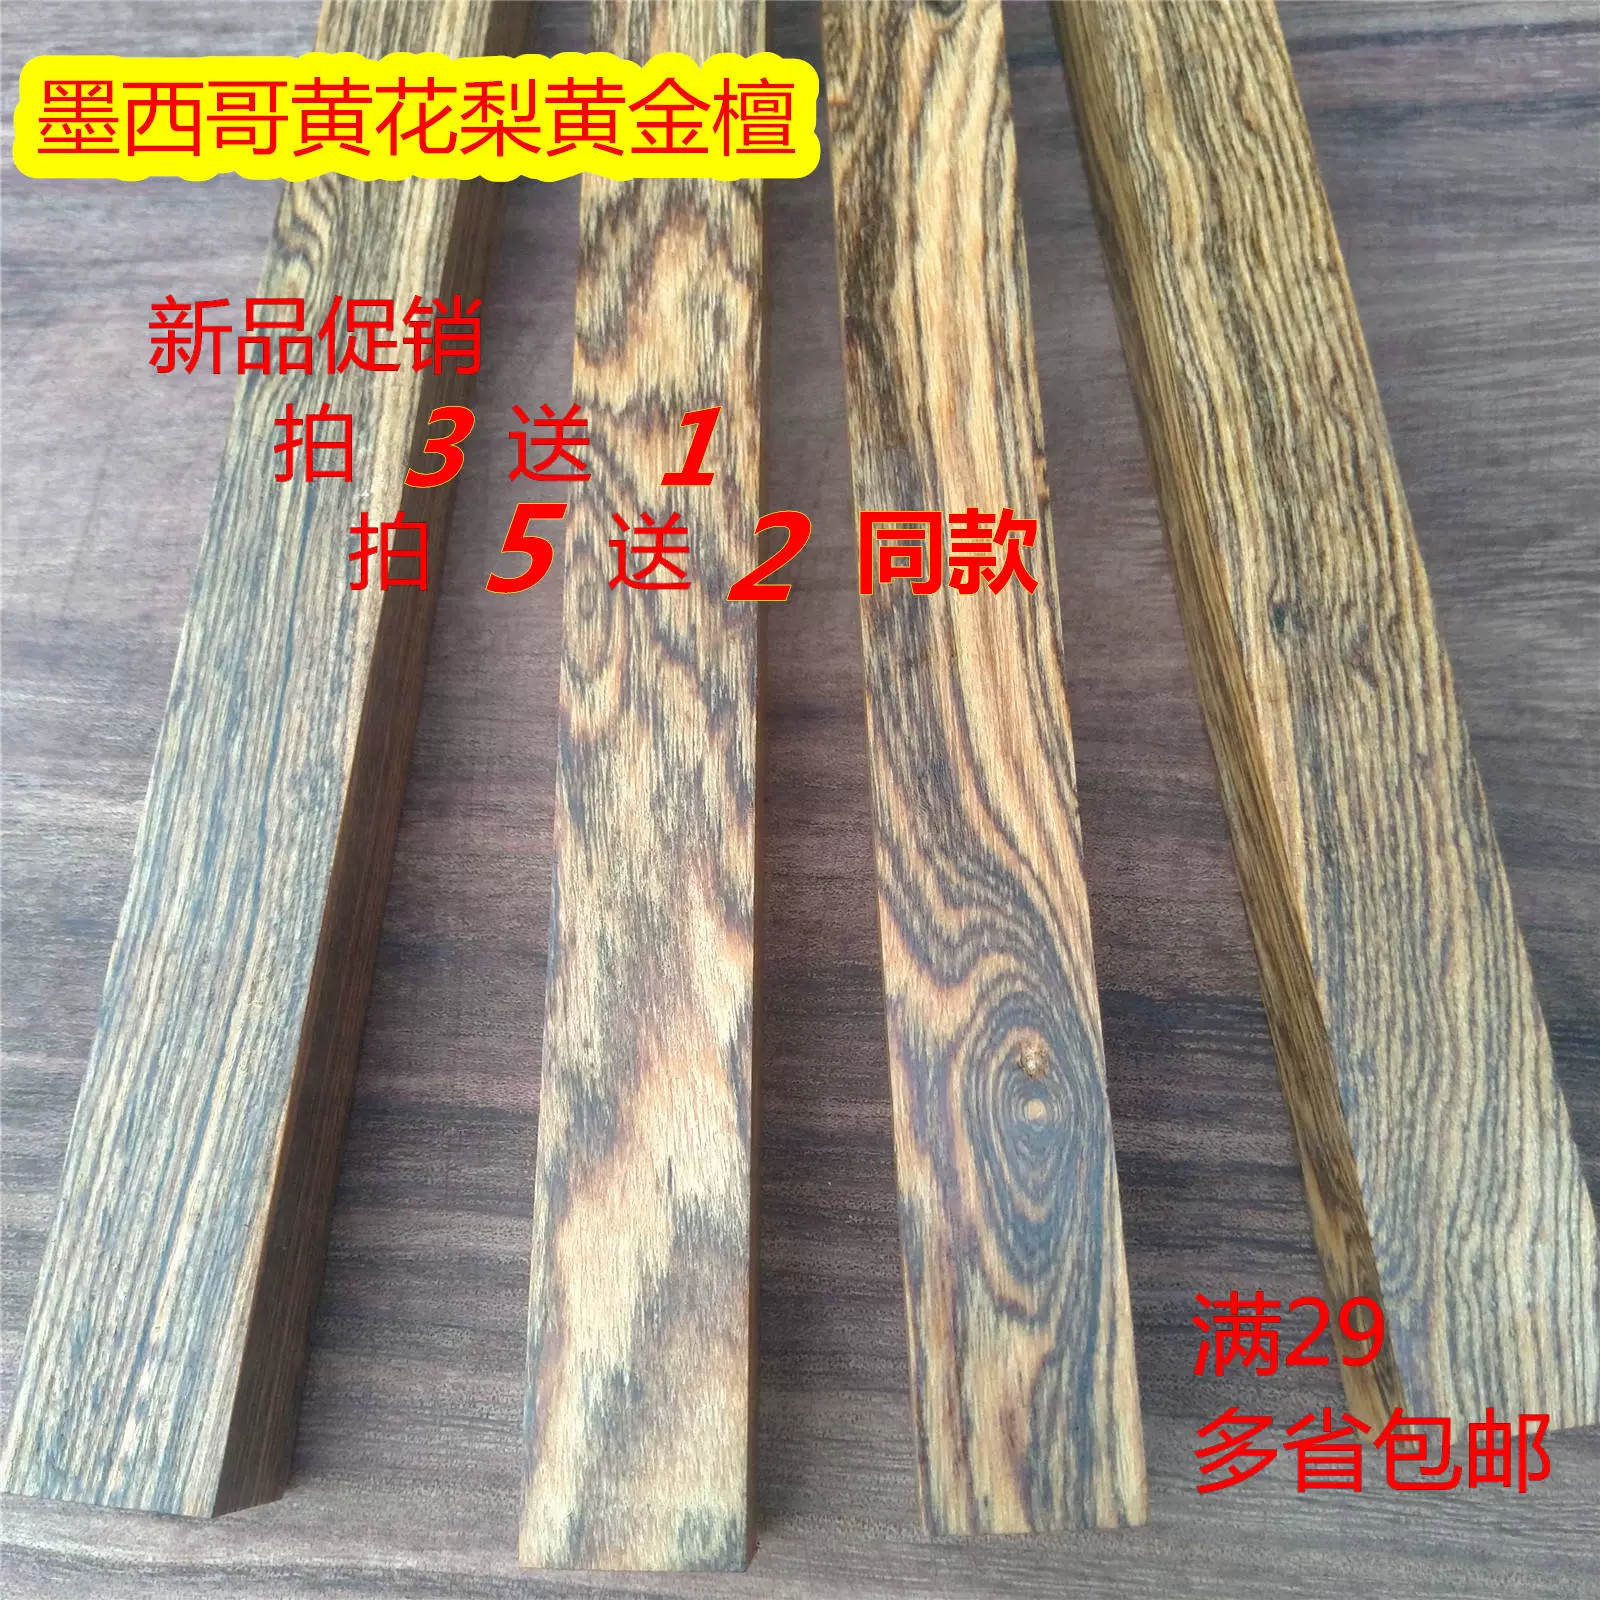 墨西哥黄花梨黄金檀原木料木材木板刀柄料diy制作材料弹弓把手料-Taobao